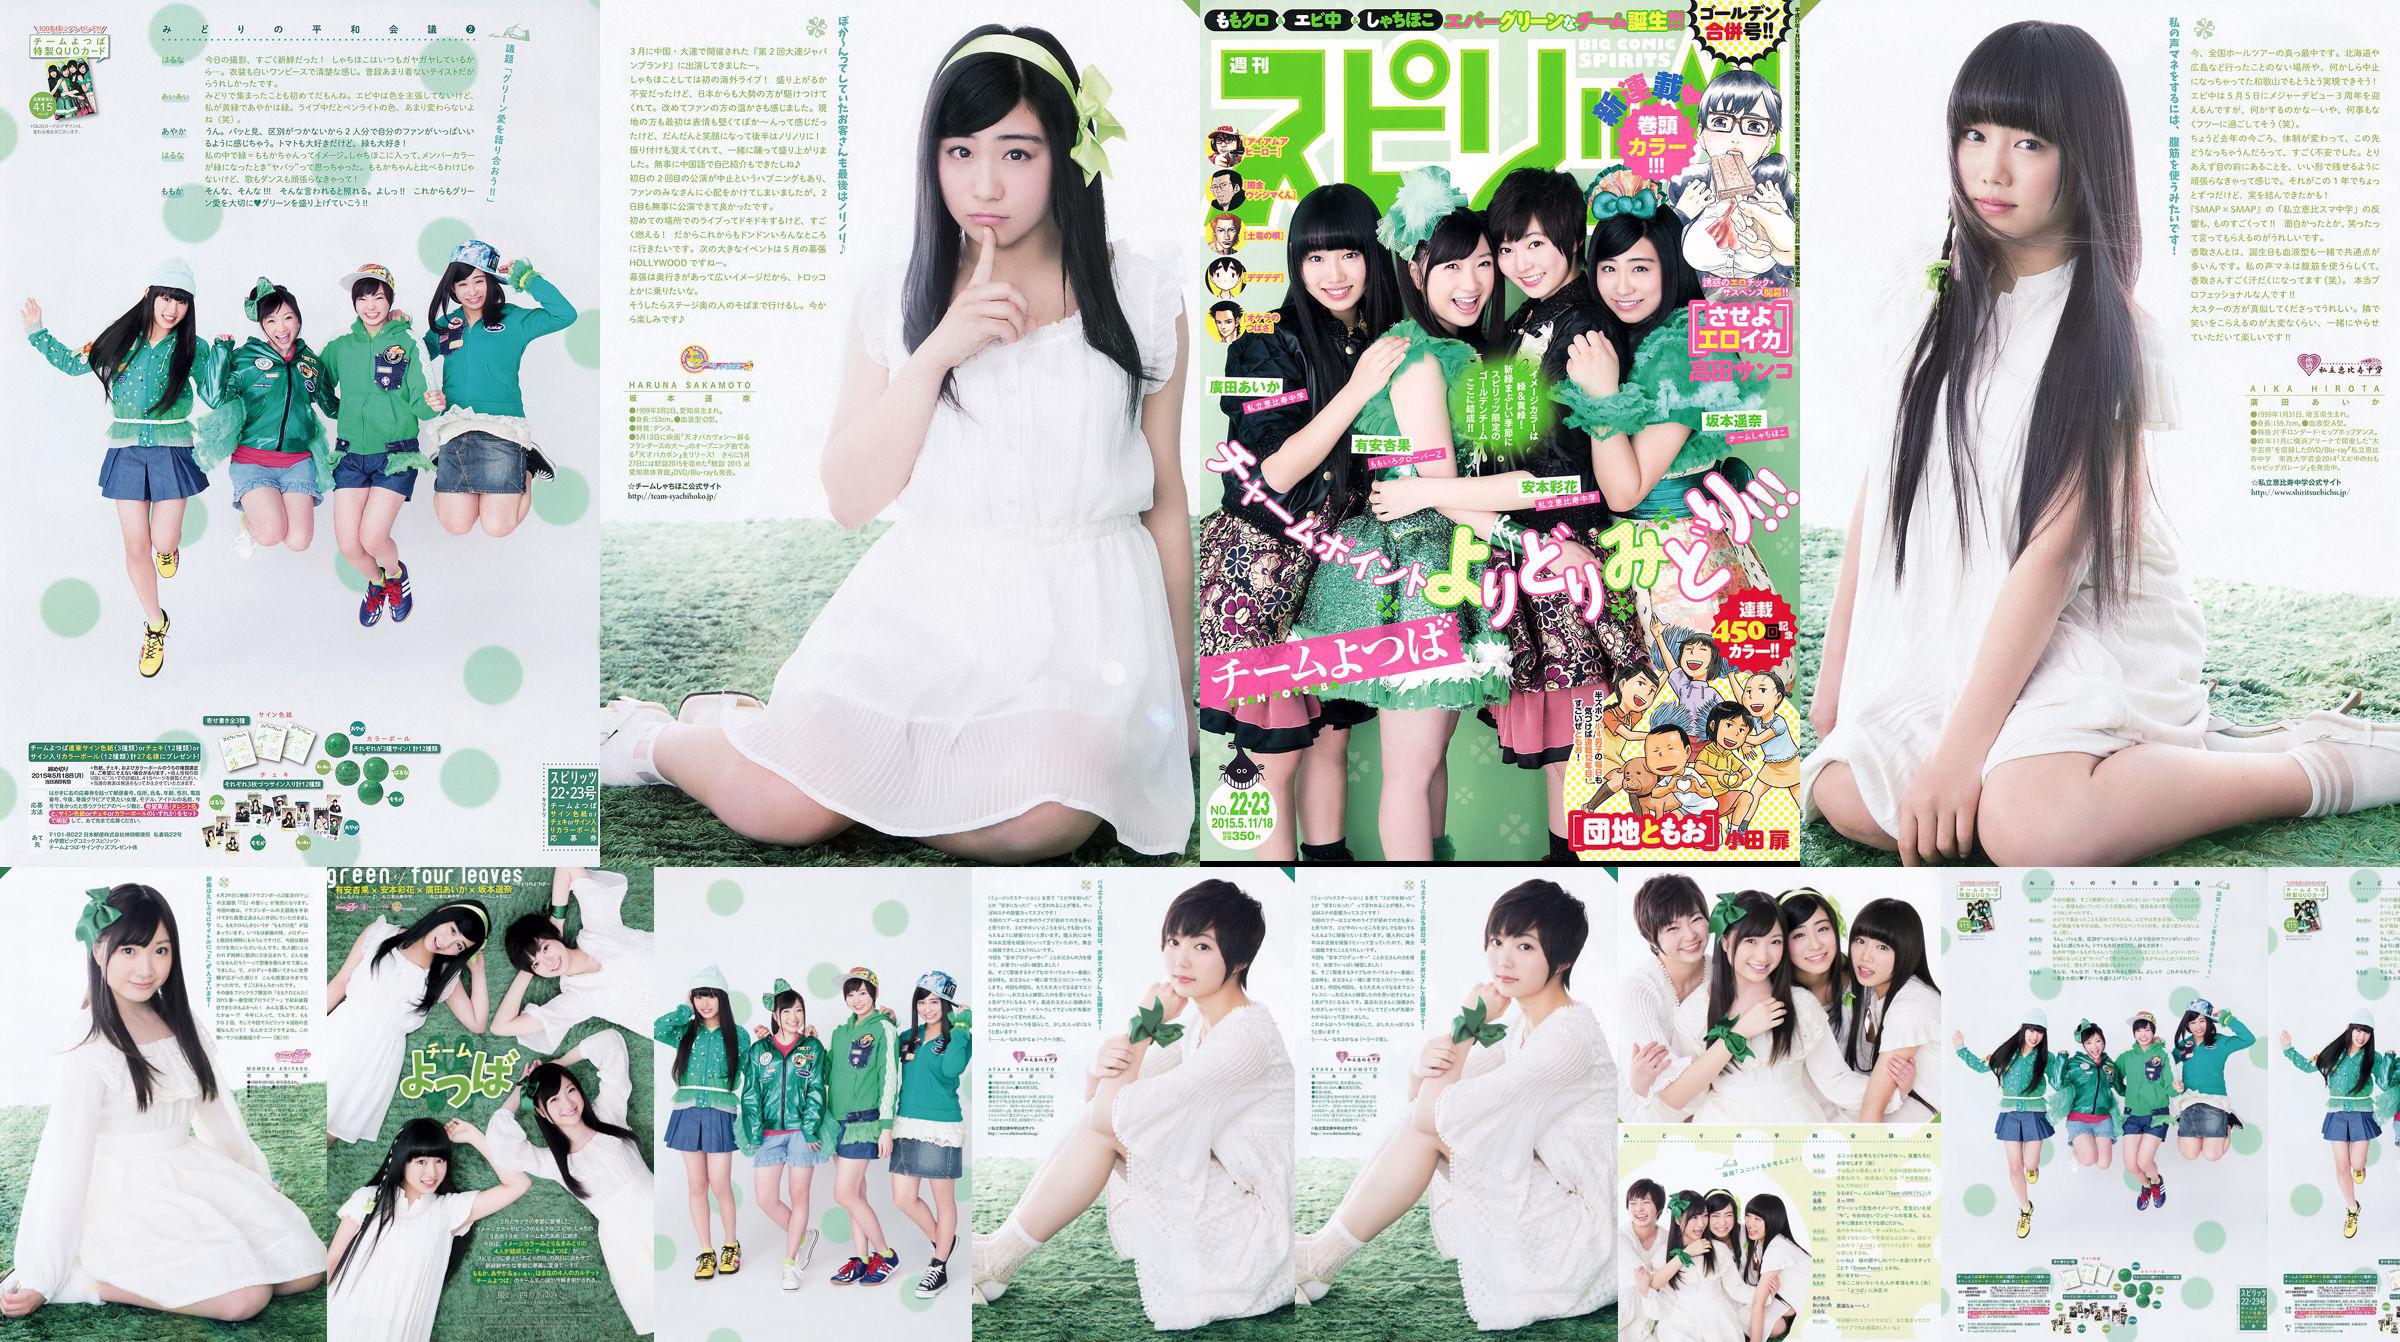 [Weekly Big Comic Spirits] Ayaka Ayana Ayana Sakamoto Haruna Hirota 2015 No.22-23 Photo Magazine No.21eb76 Pagina 1